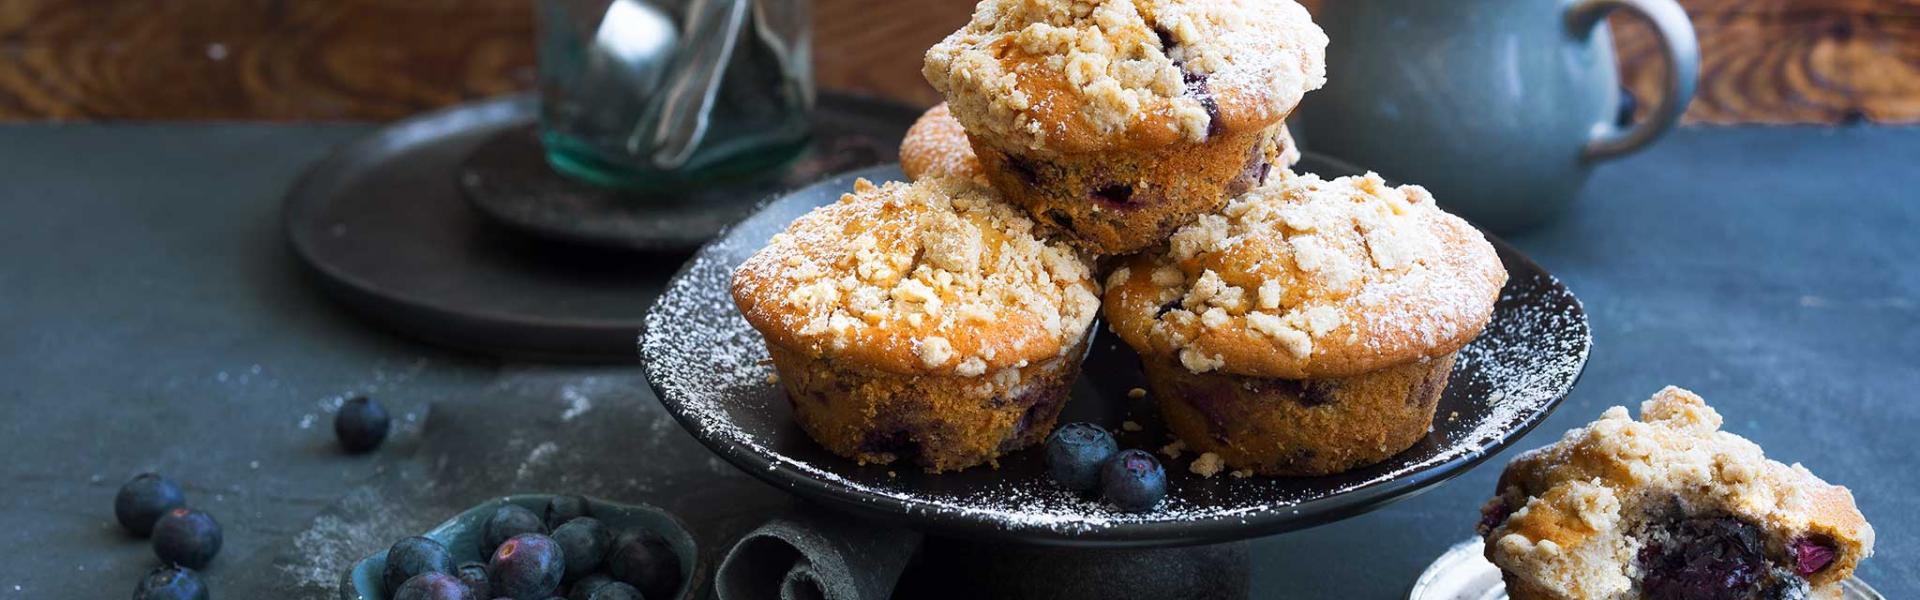 Ahornsirup-Heidelbeer-Muffins mit Haferflocken | Simply Yummy